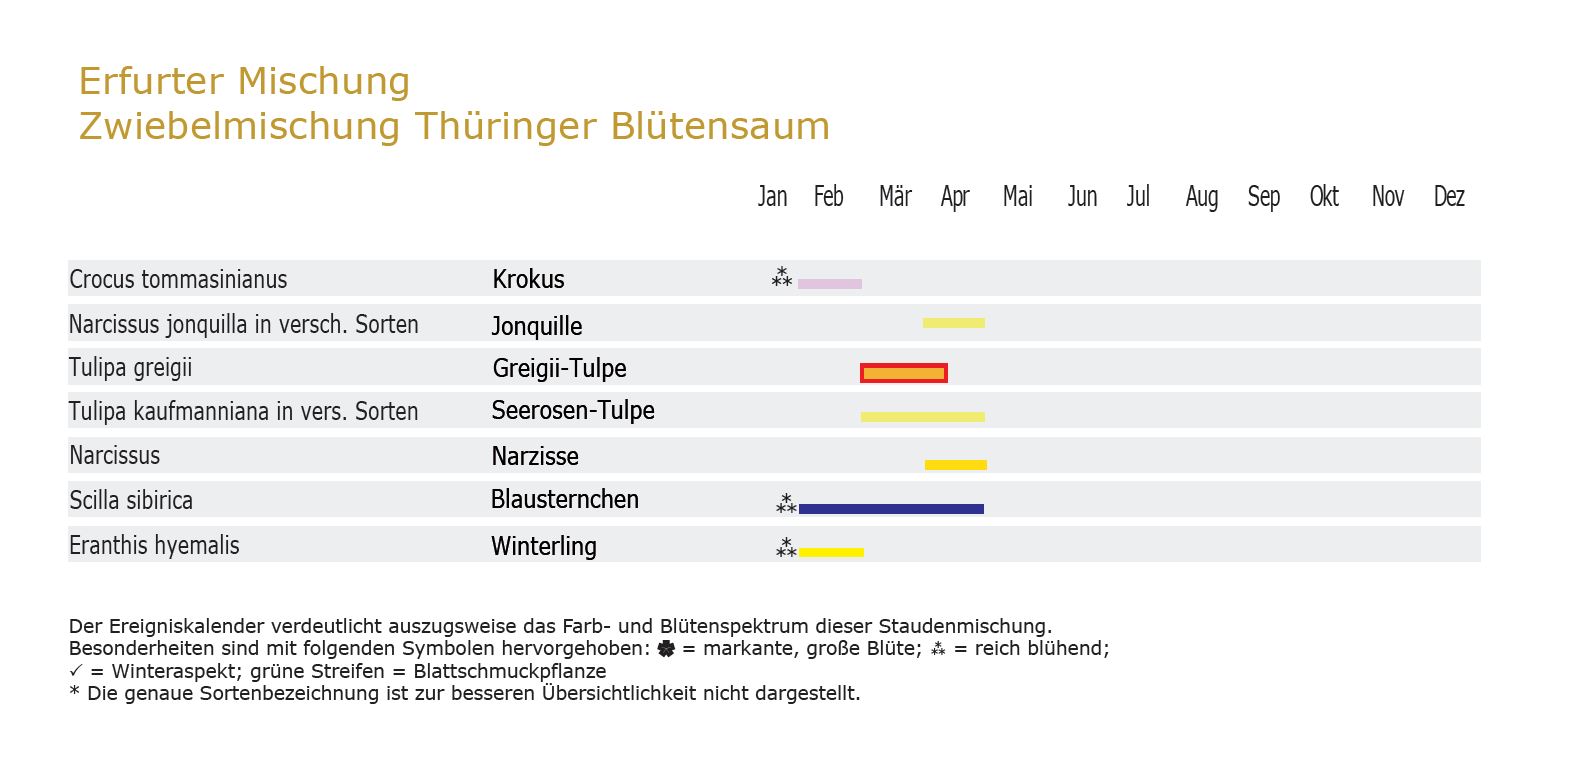 Thüringer Blütensaum - Zwiebel-und Knollenmischung